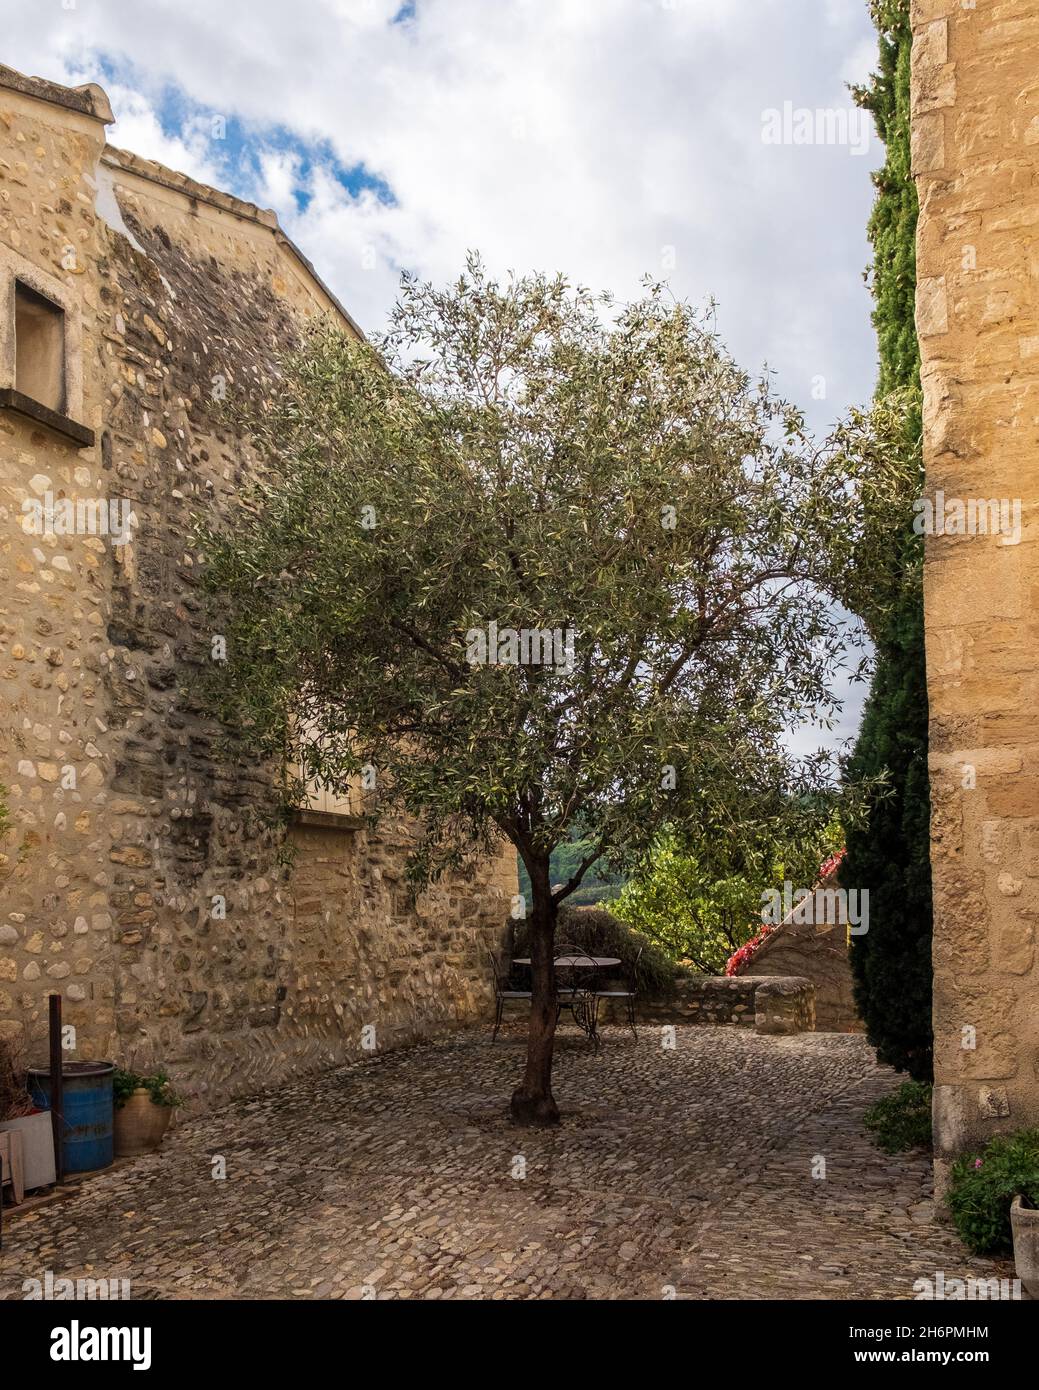 En el centro de la localidad de Vinsobres, hay un olivo en el patio adoquinado situado fuera de una casa antigua Foto de stock